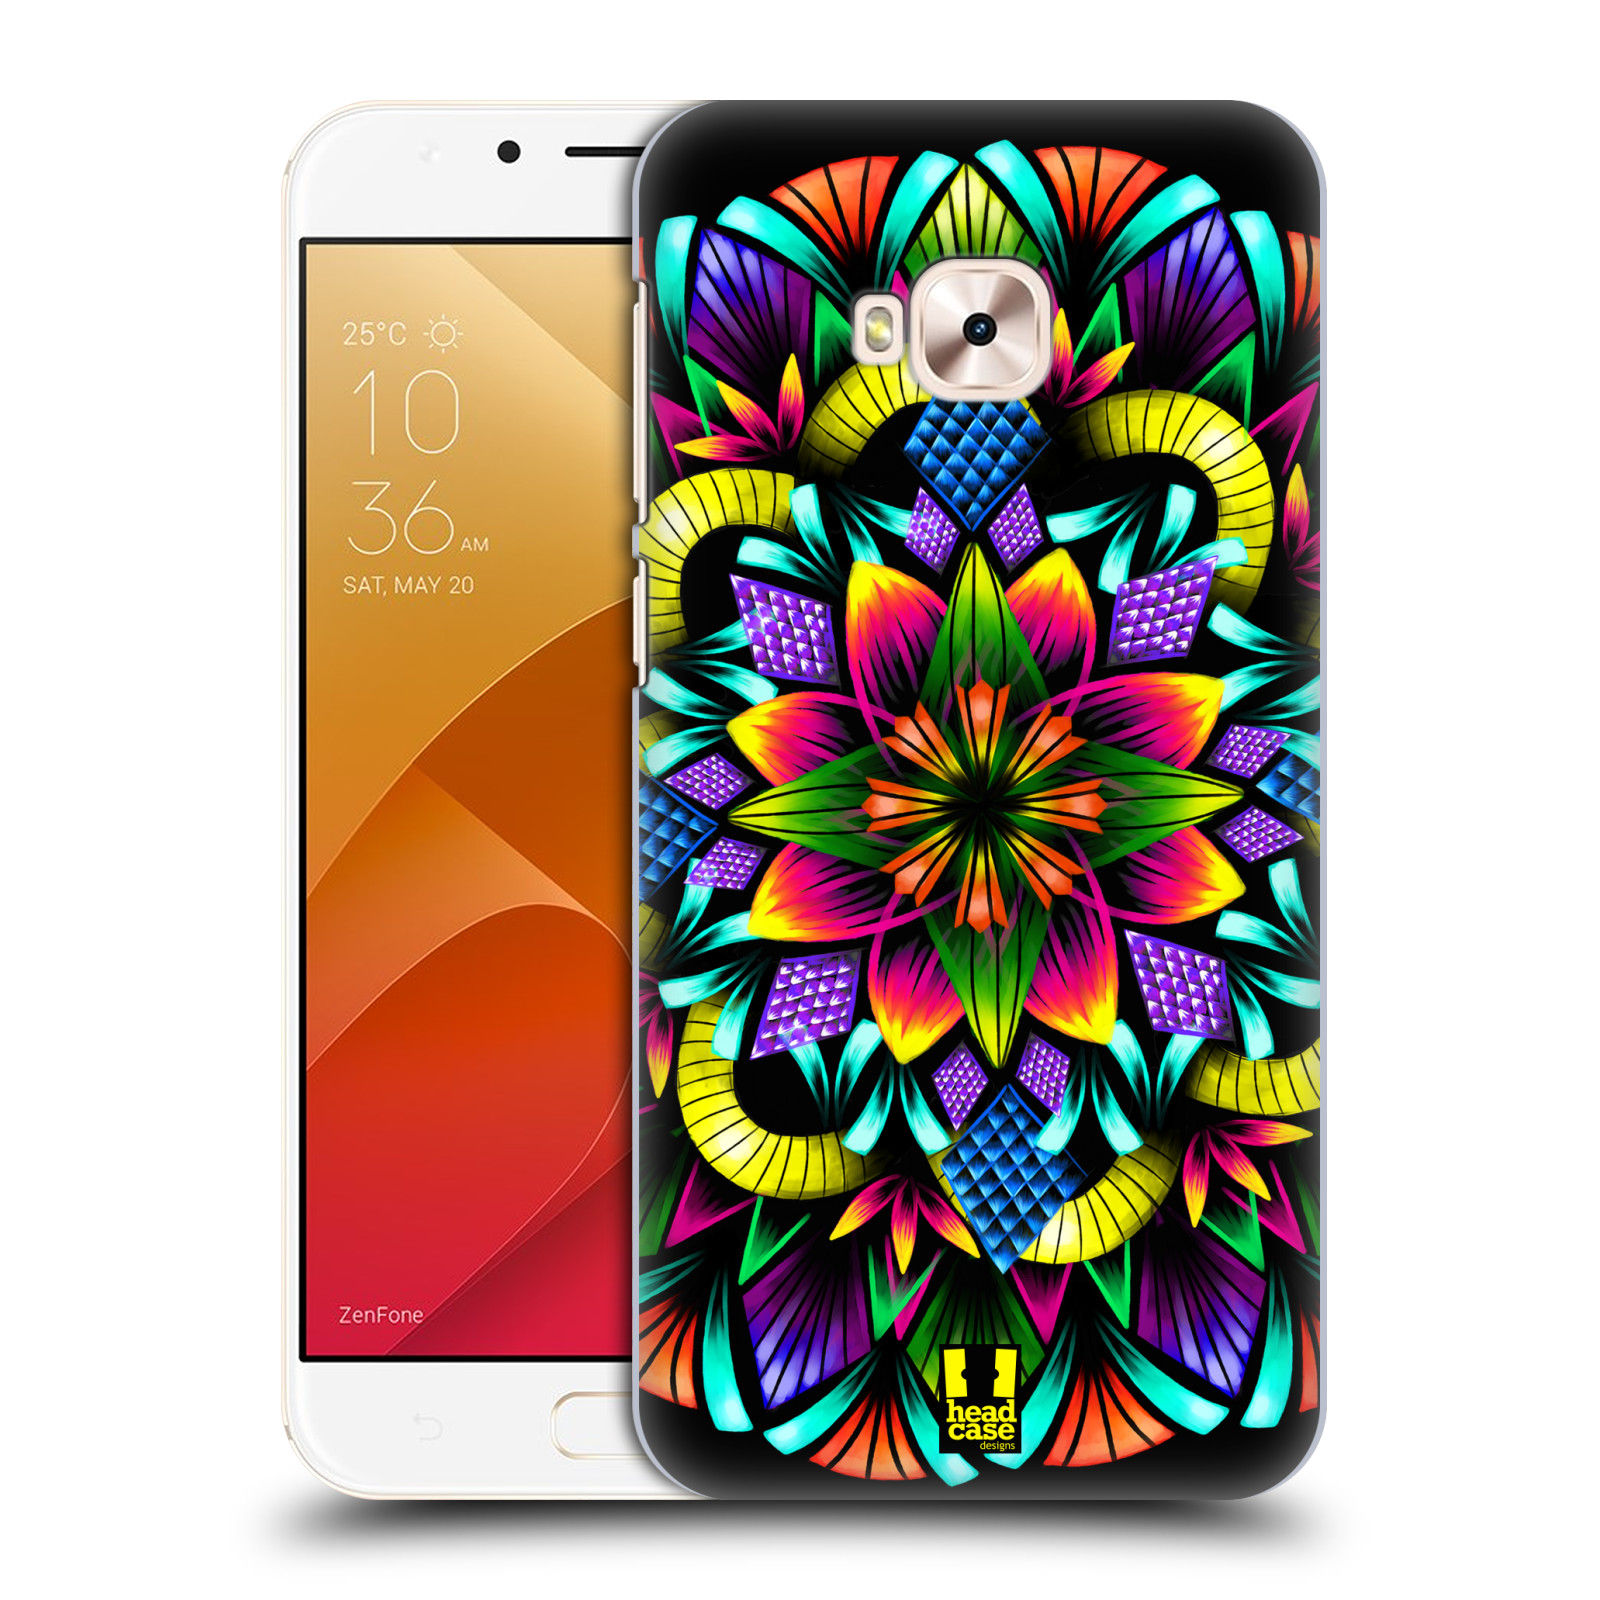 HEAD CASE plastový obal na mobil Asus Zenfone 4 Selfie Pro ZD552KL vzor Indie Mandala kaleidoskop barevný vzor KVĚTINA